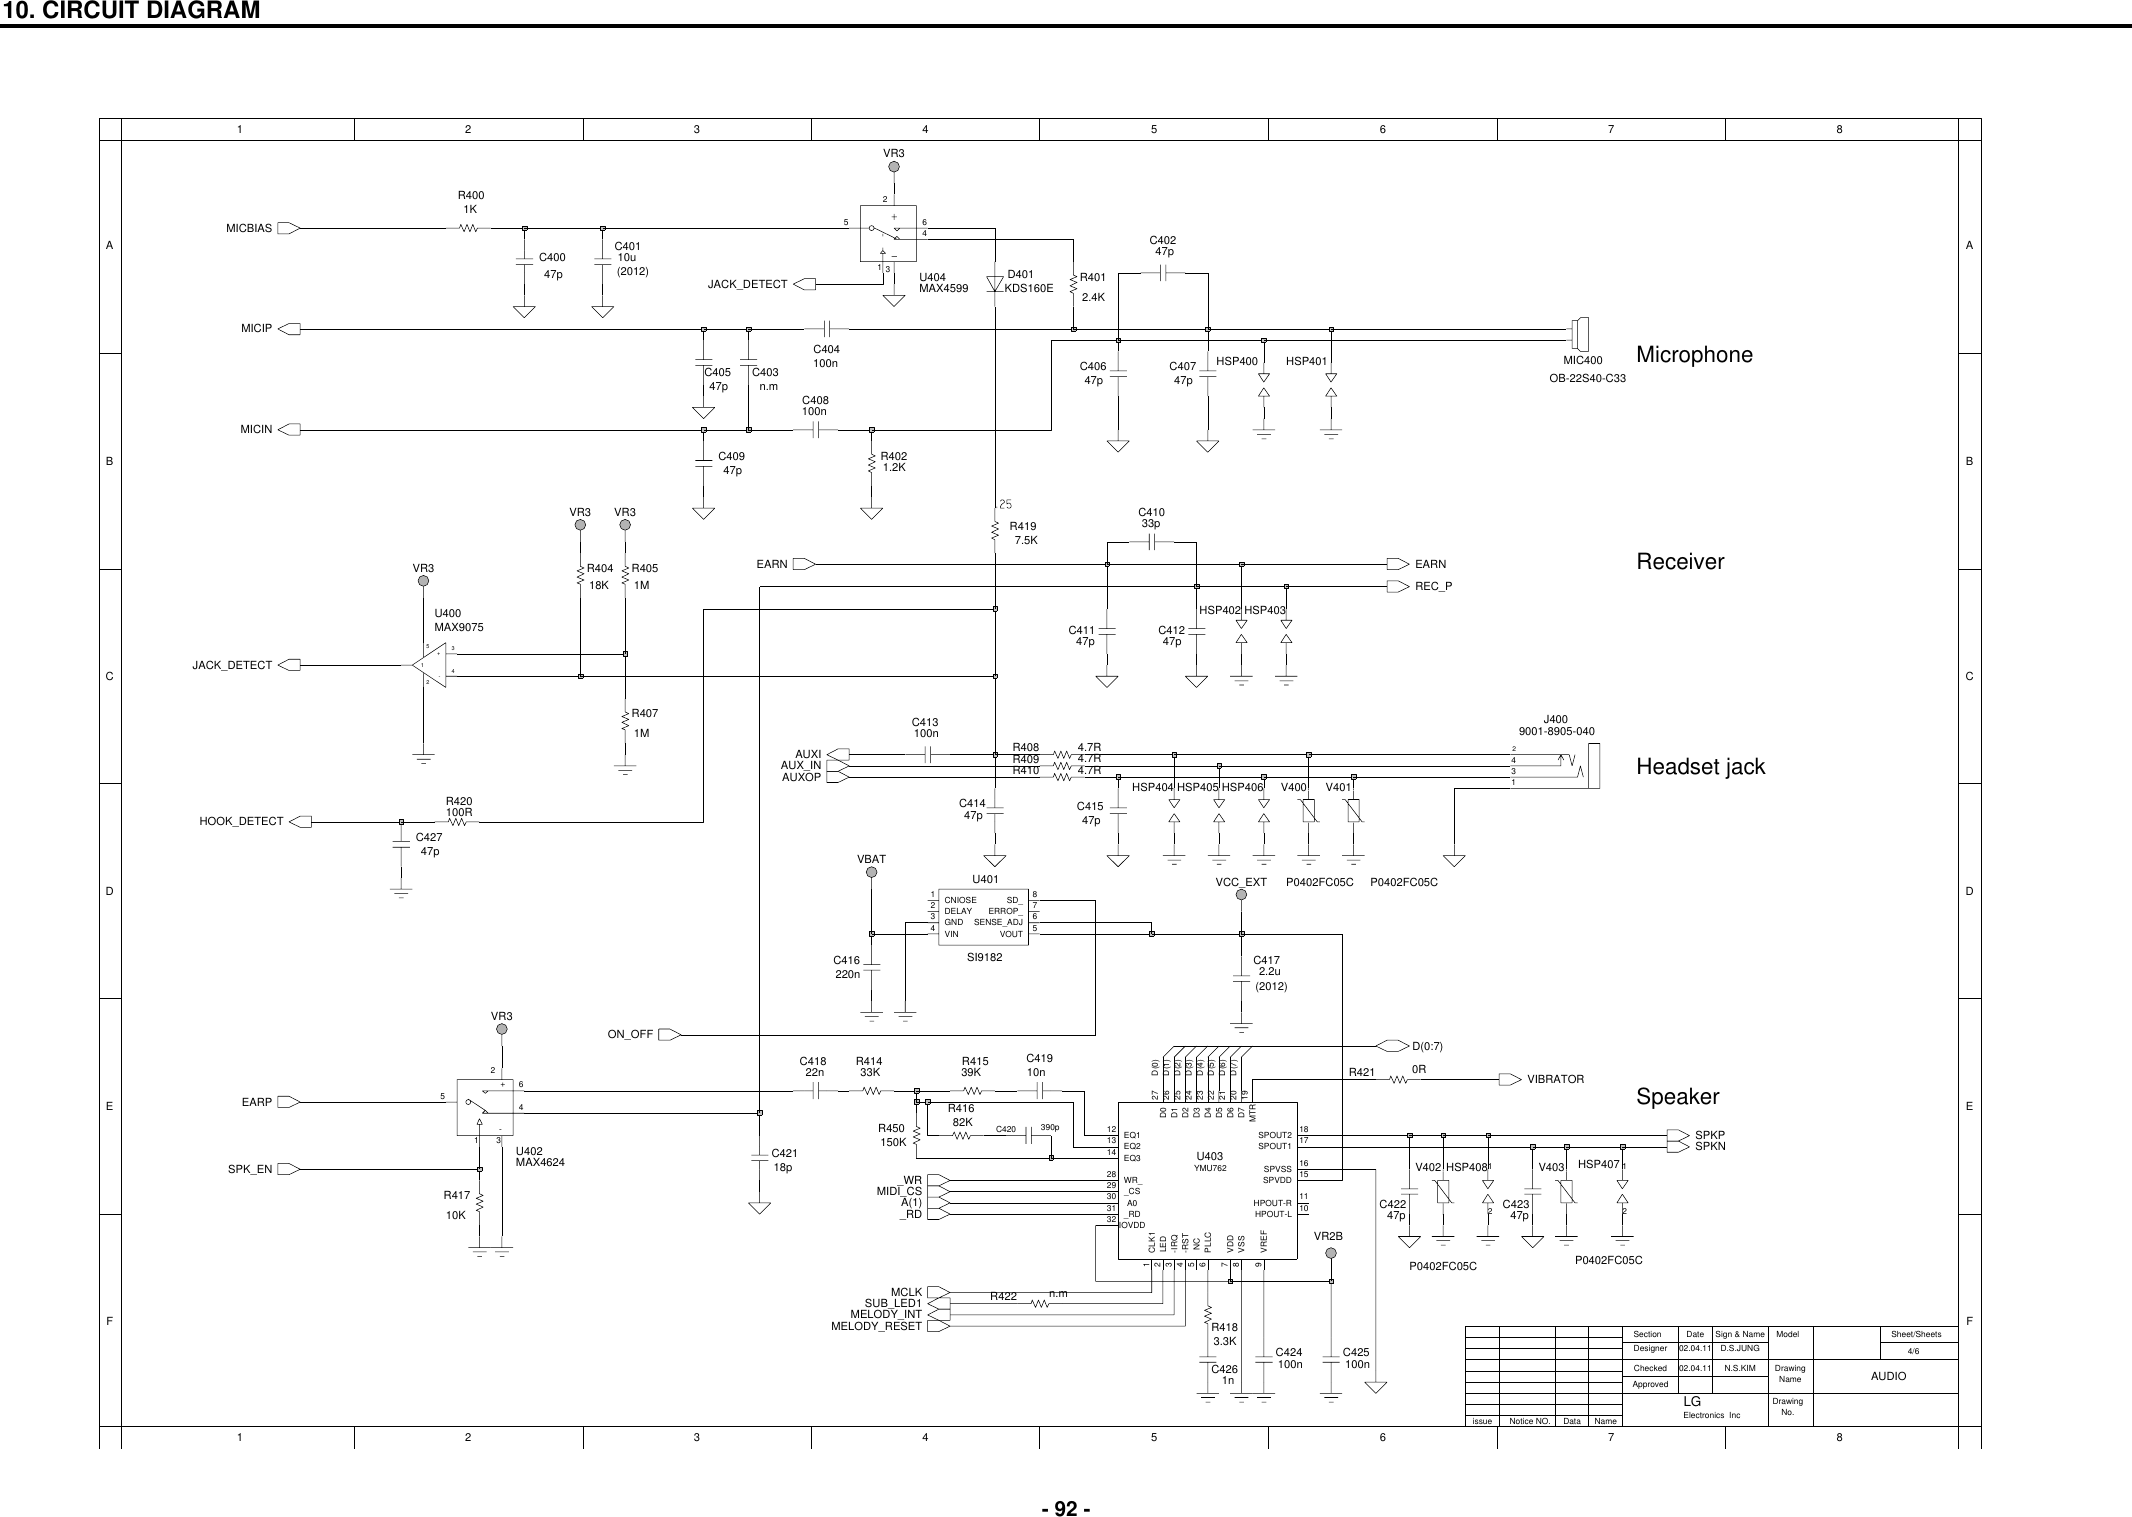 Page 4 of 9 - LG G7020 - Schematics. Www.s-manuals.com. Schematics